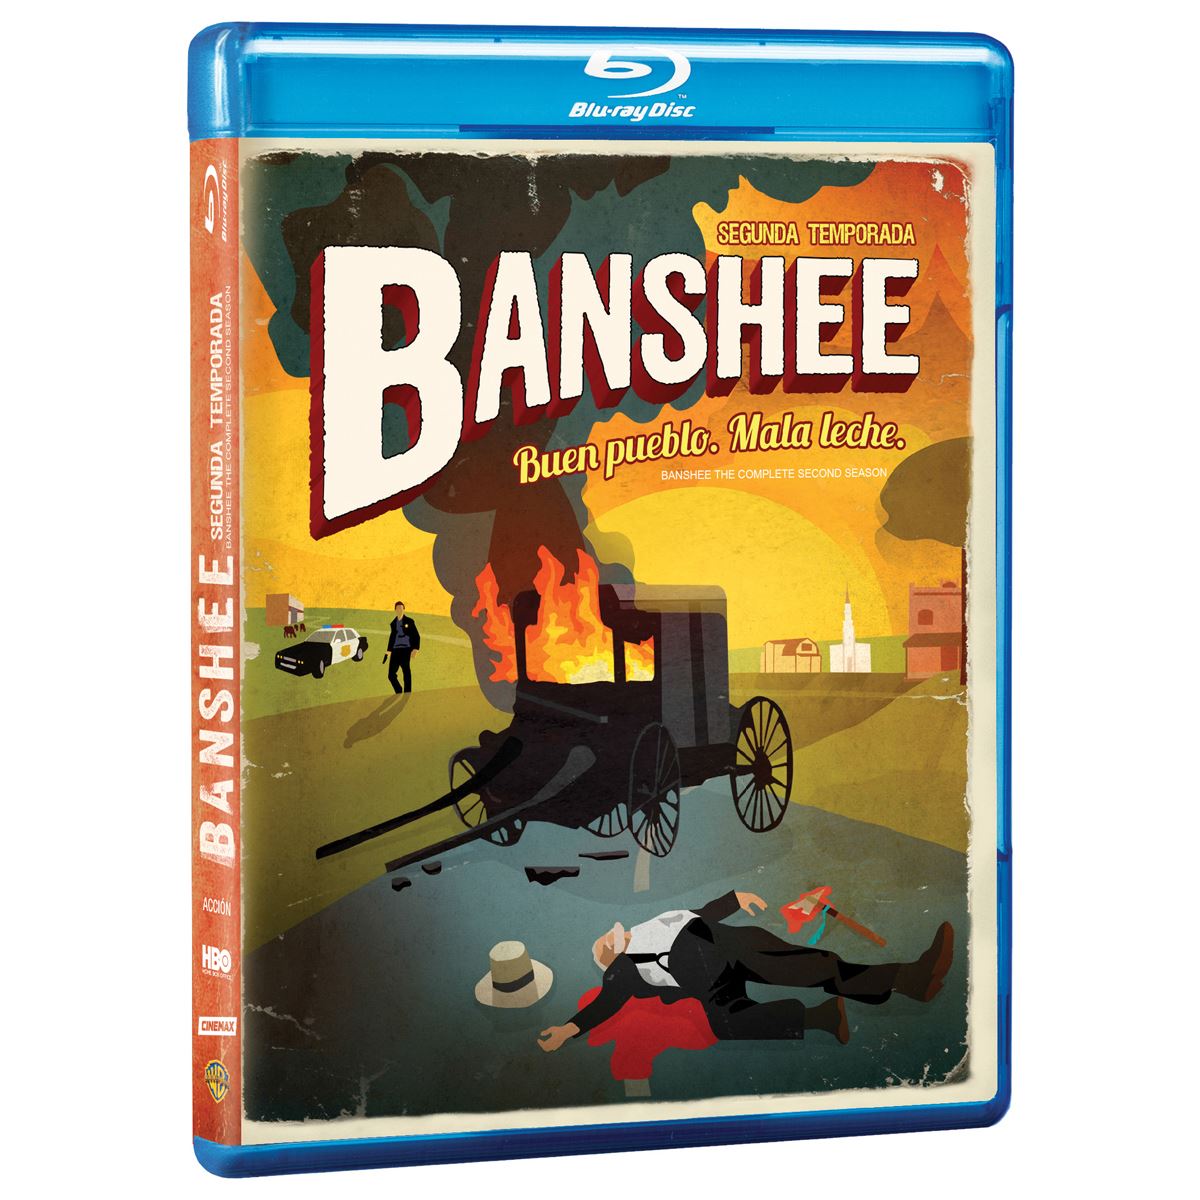 Banshee Temporada 2 - SensaCinecom